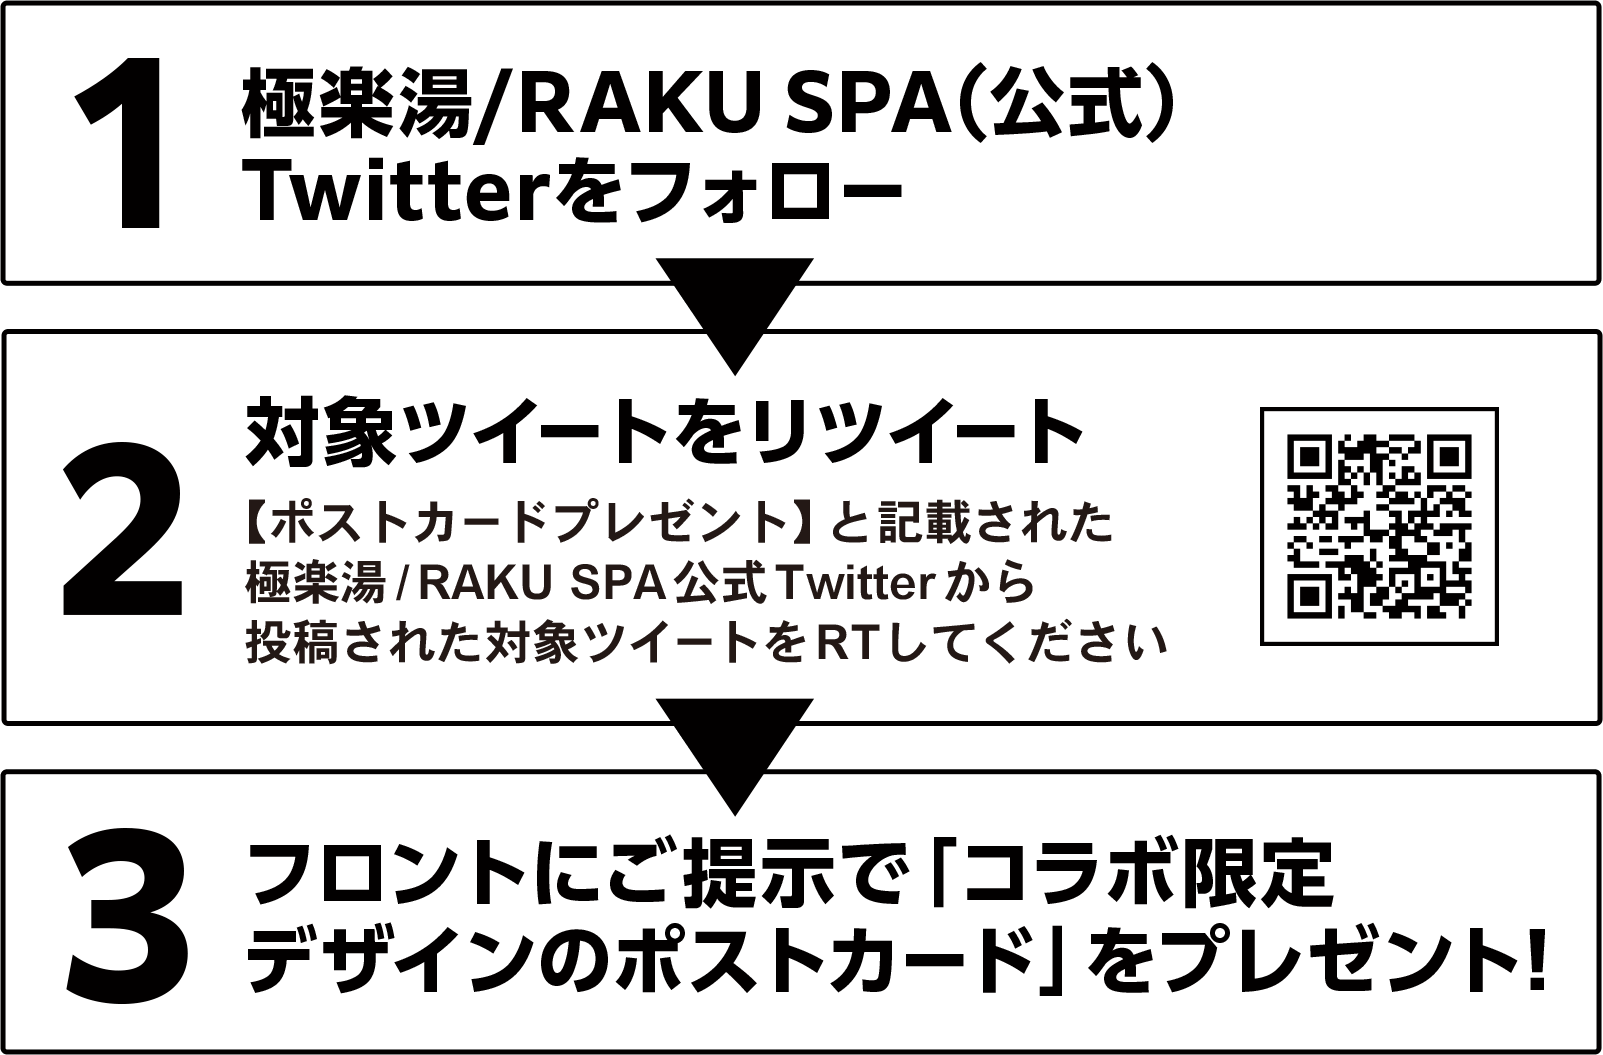 1.極楽湯/RAKU SPA（公式）Twitterをフォロー。2.【ポストカードプレゼント】と記載された極楽湯/RAKU SPA公式Twitterから投稿された対象ツイートをRTしてください。3.フロントにご提示で「コラボ限定デザインのポストカード」をプレゼント！